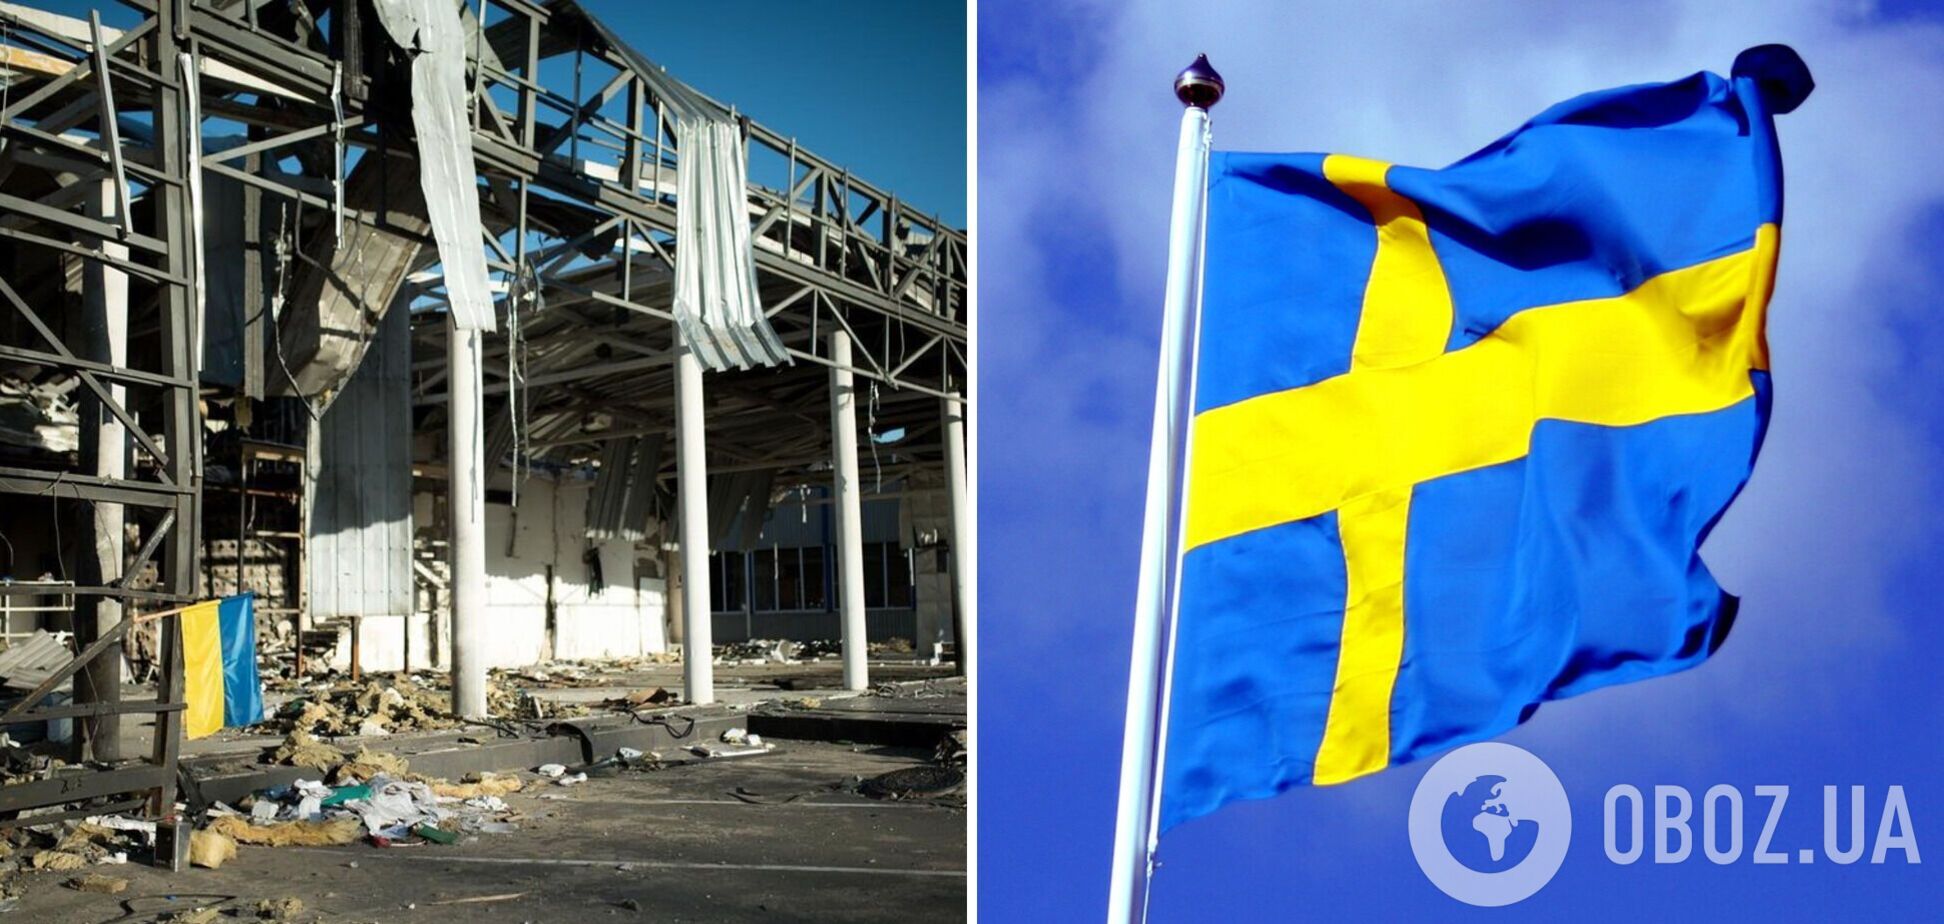 Швеция передаст Украине еще 55 млн евро: их потратят на восстановление разрушенных школ и больниц